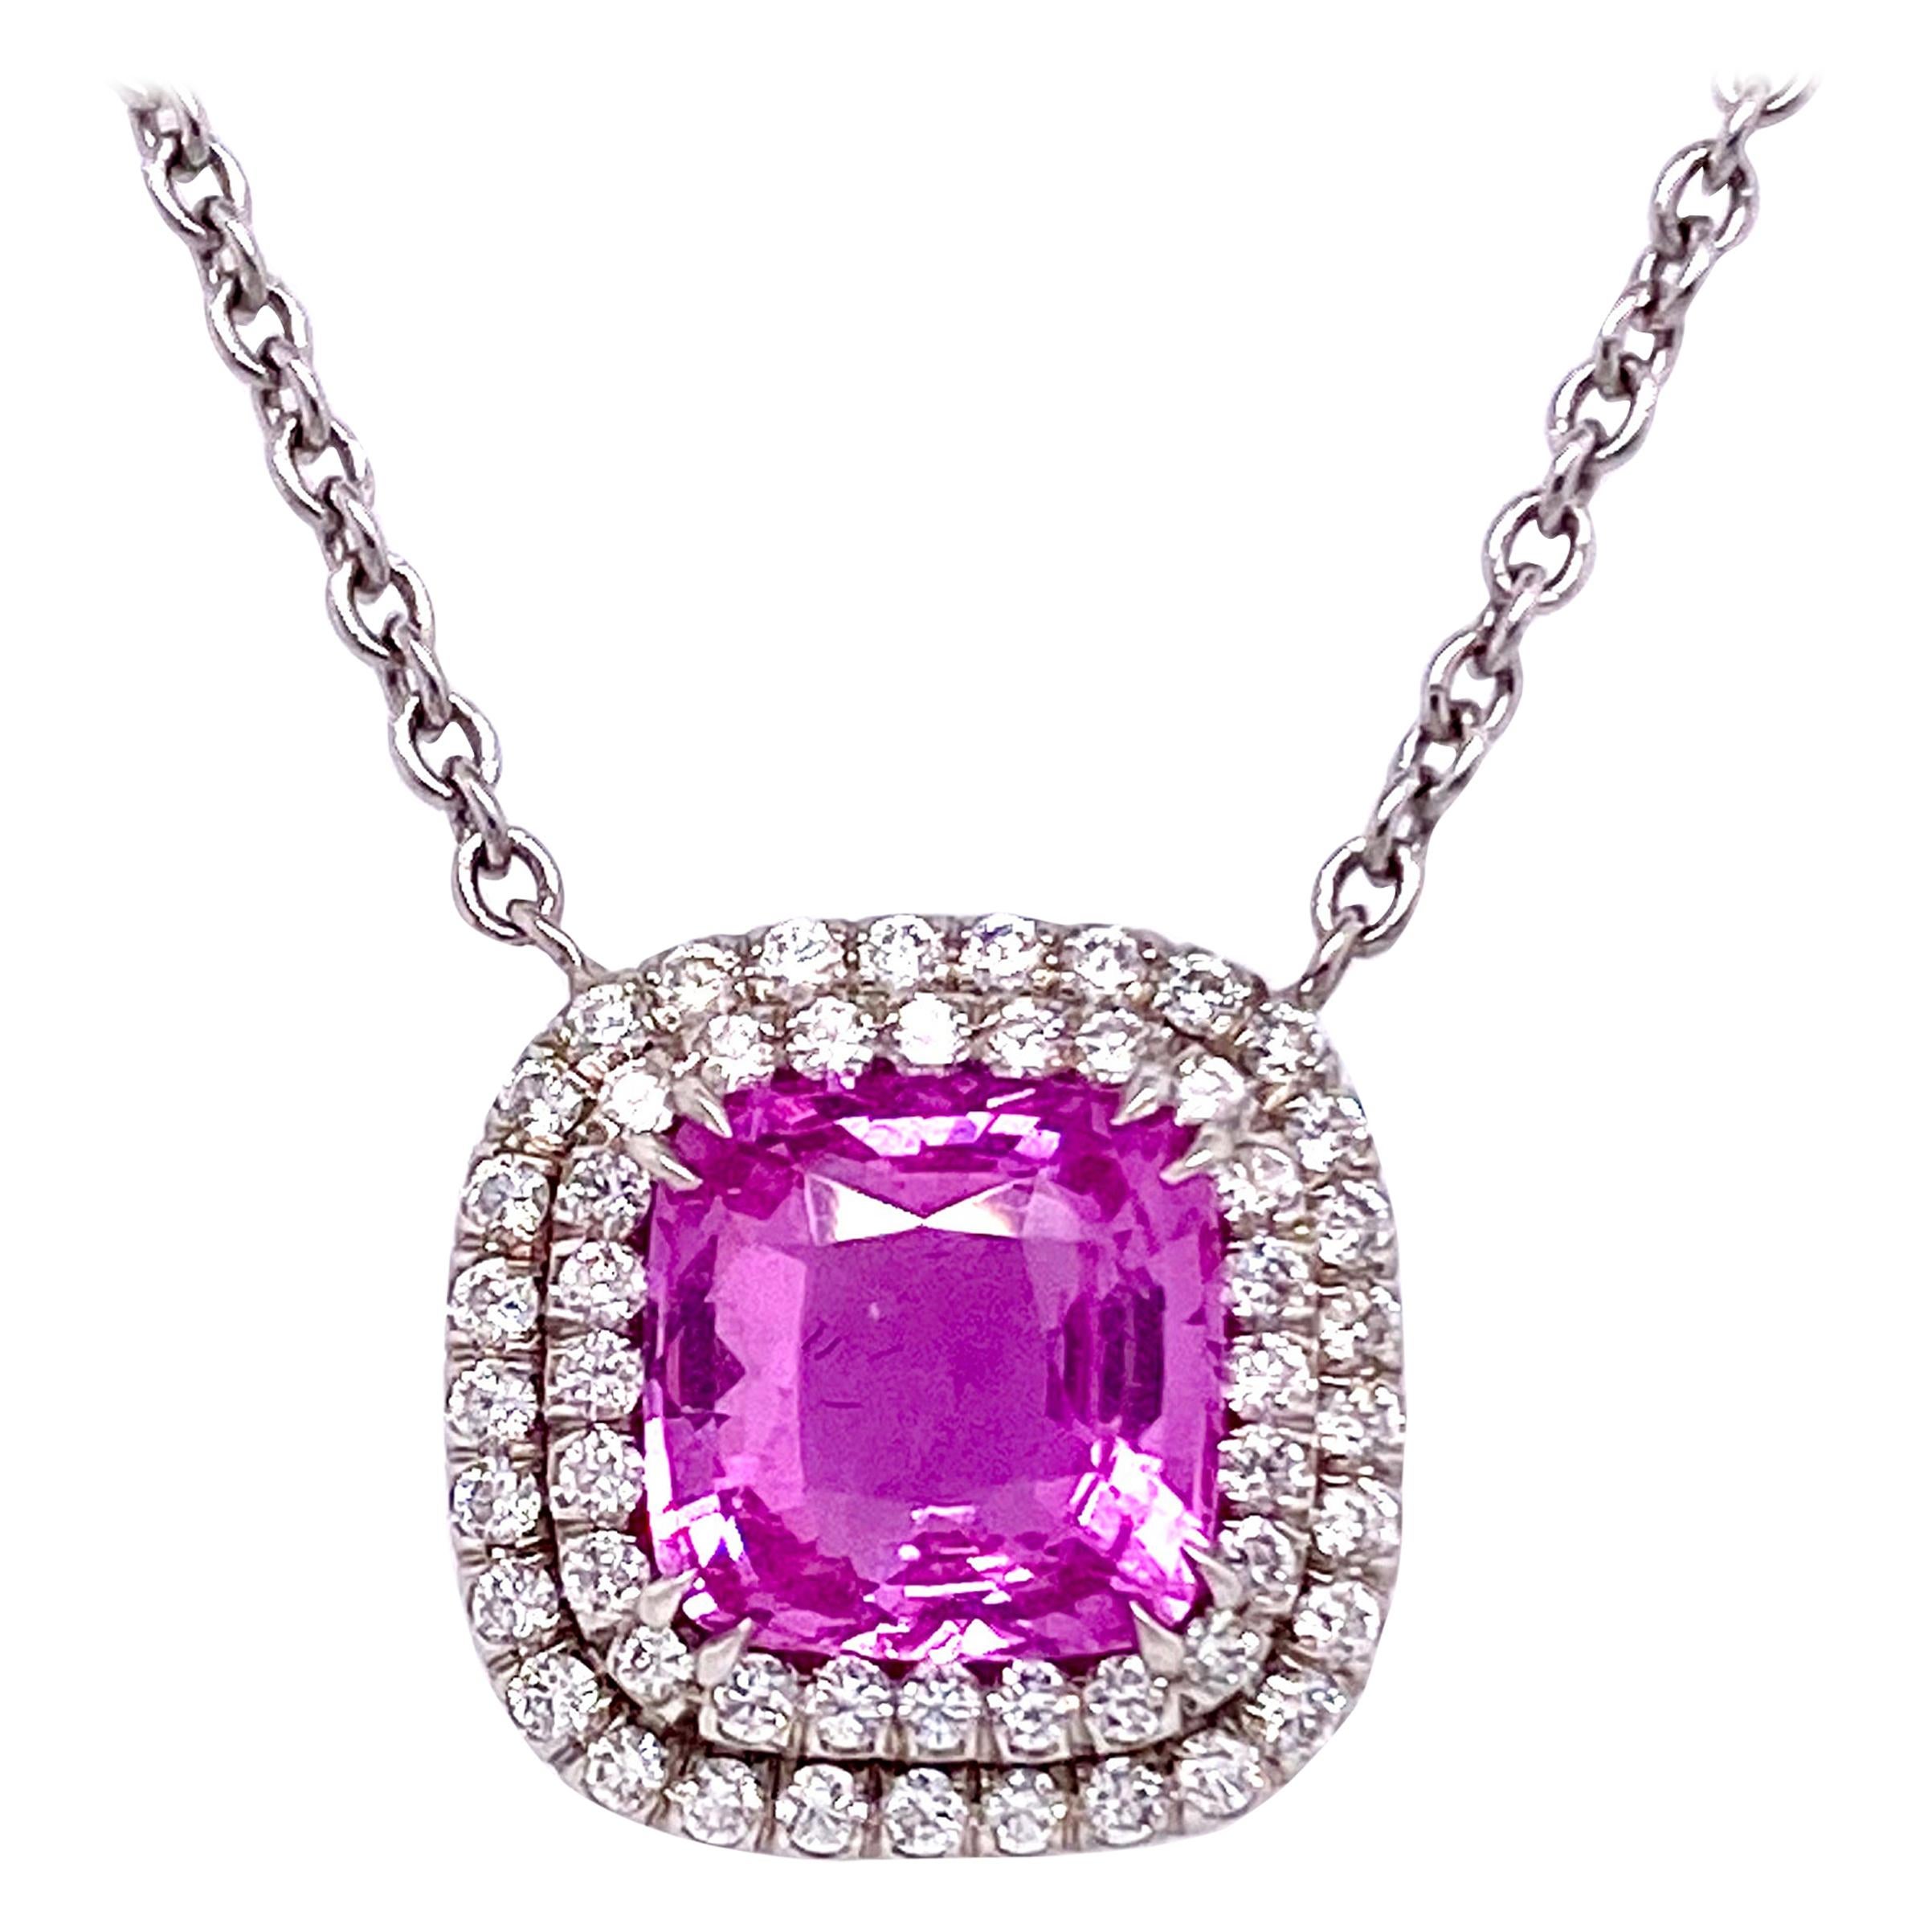 Collier halo de saphirs roses de 2,58 carats et diamants avec chaîne en platine